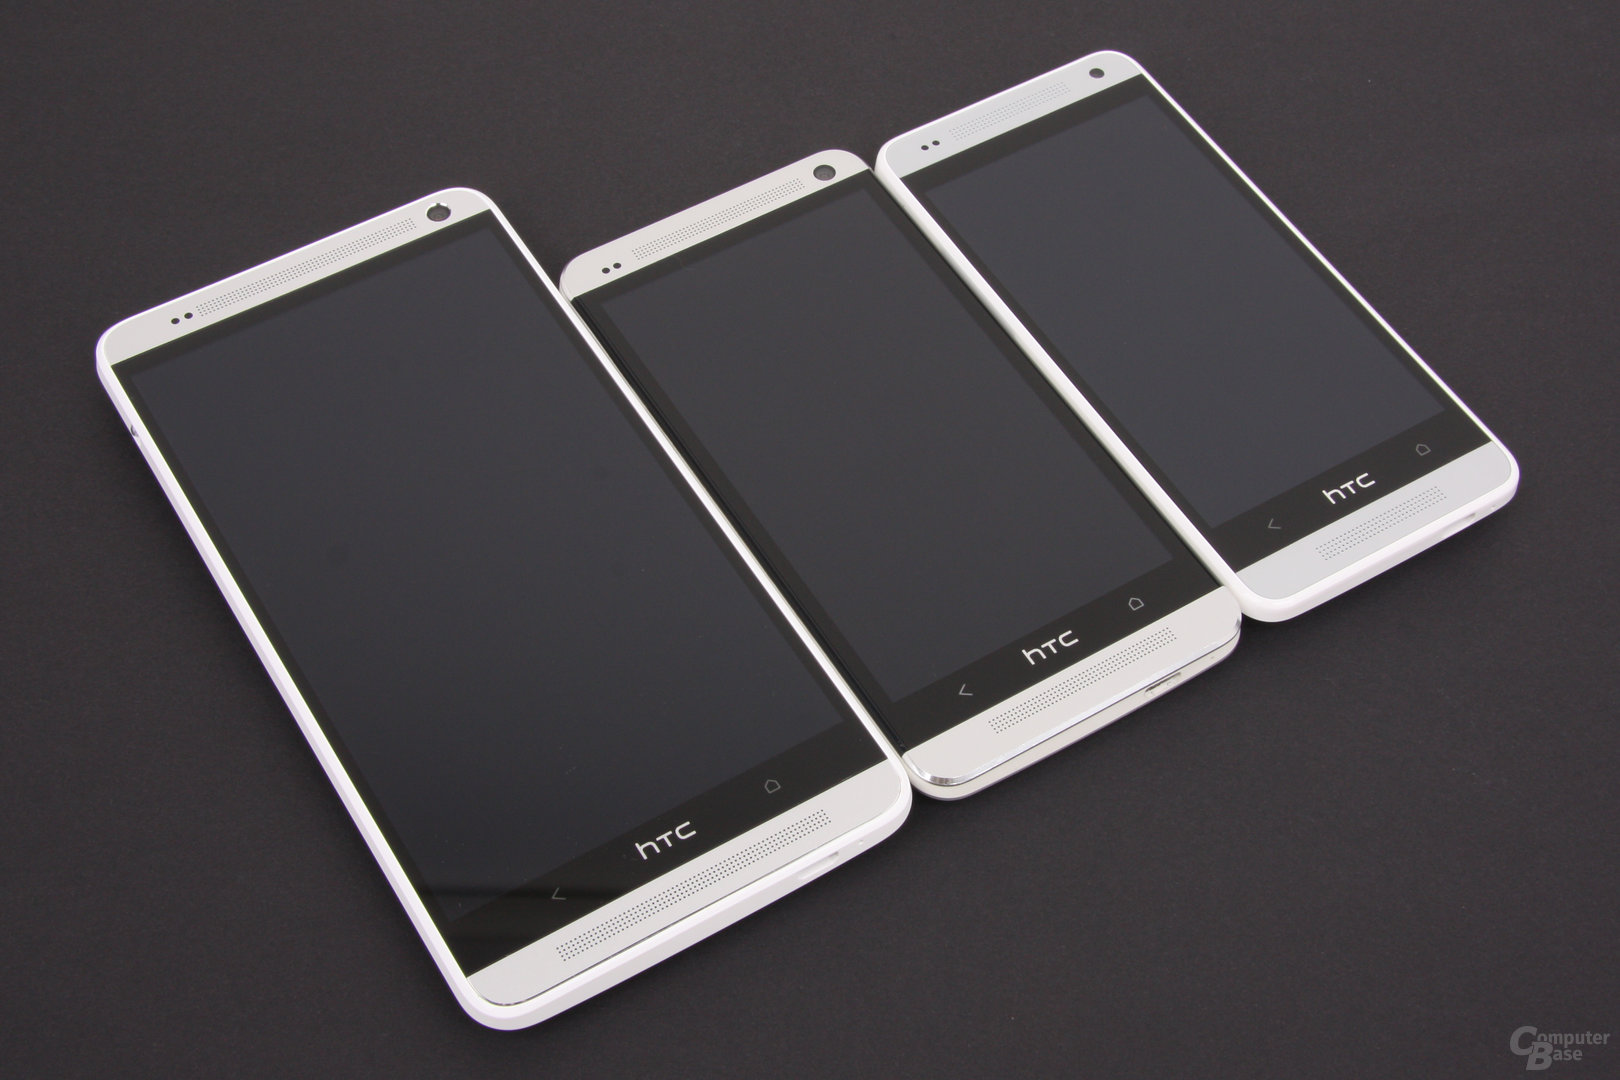 HTC One max / One / One mini